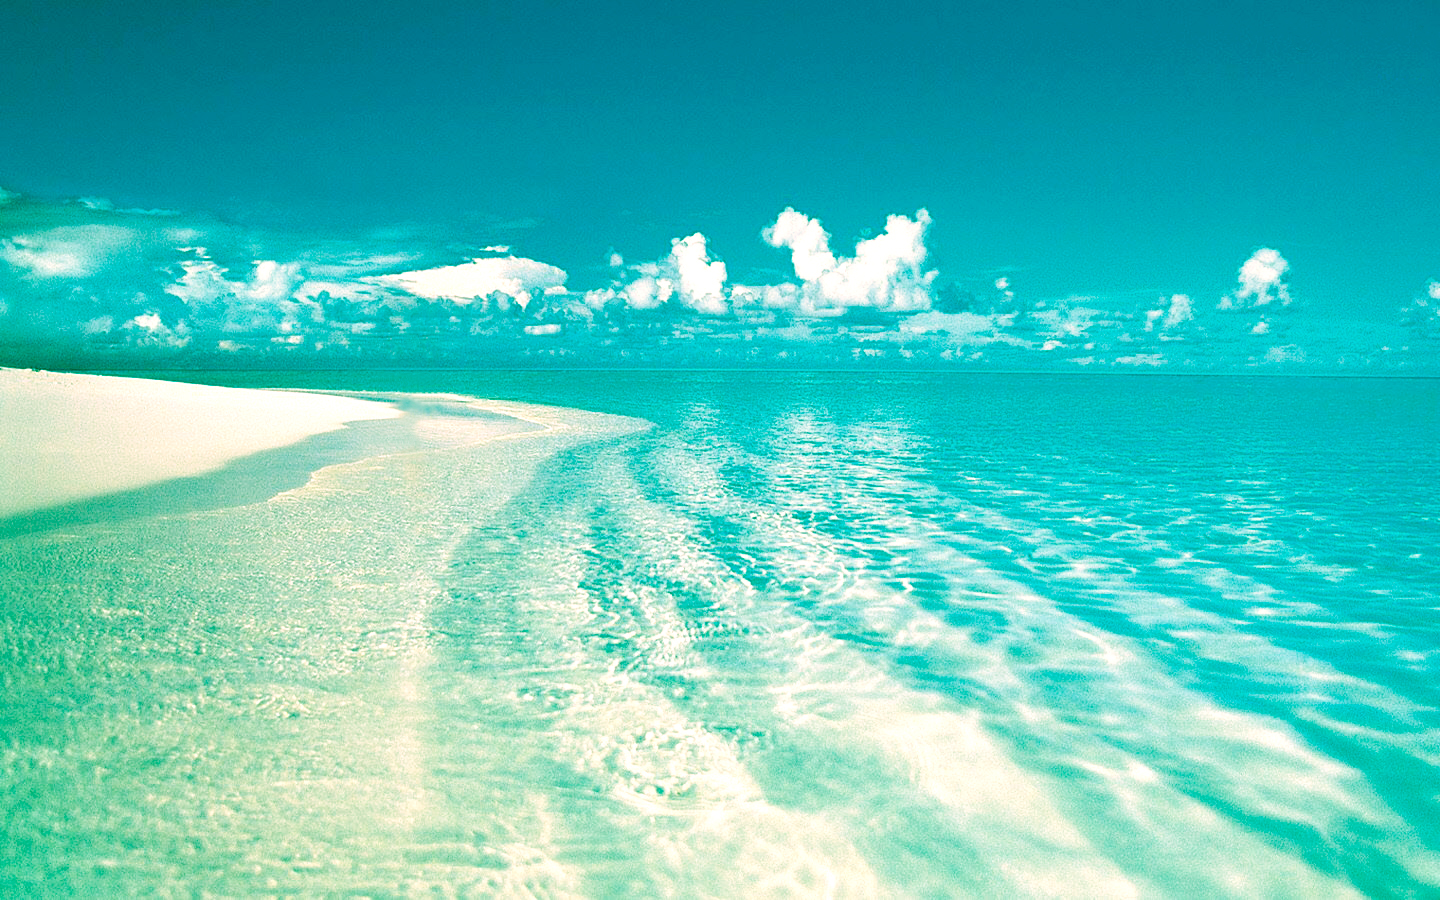 Скачать обои бесплатно Пляж, Земля/природа картинка на рабочий стол ПК